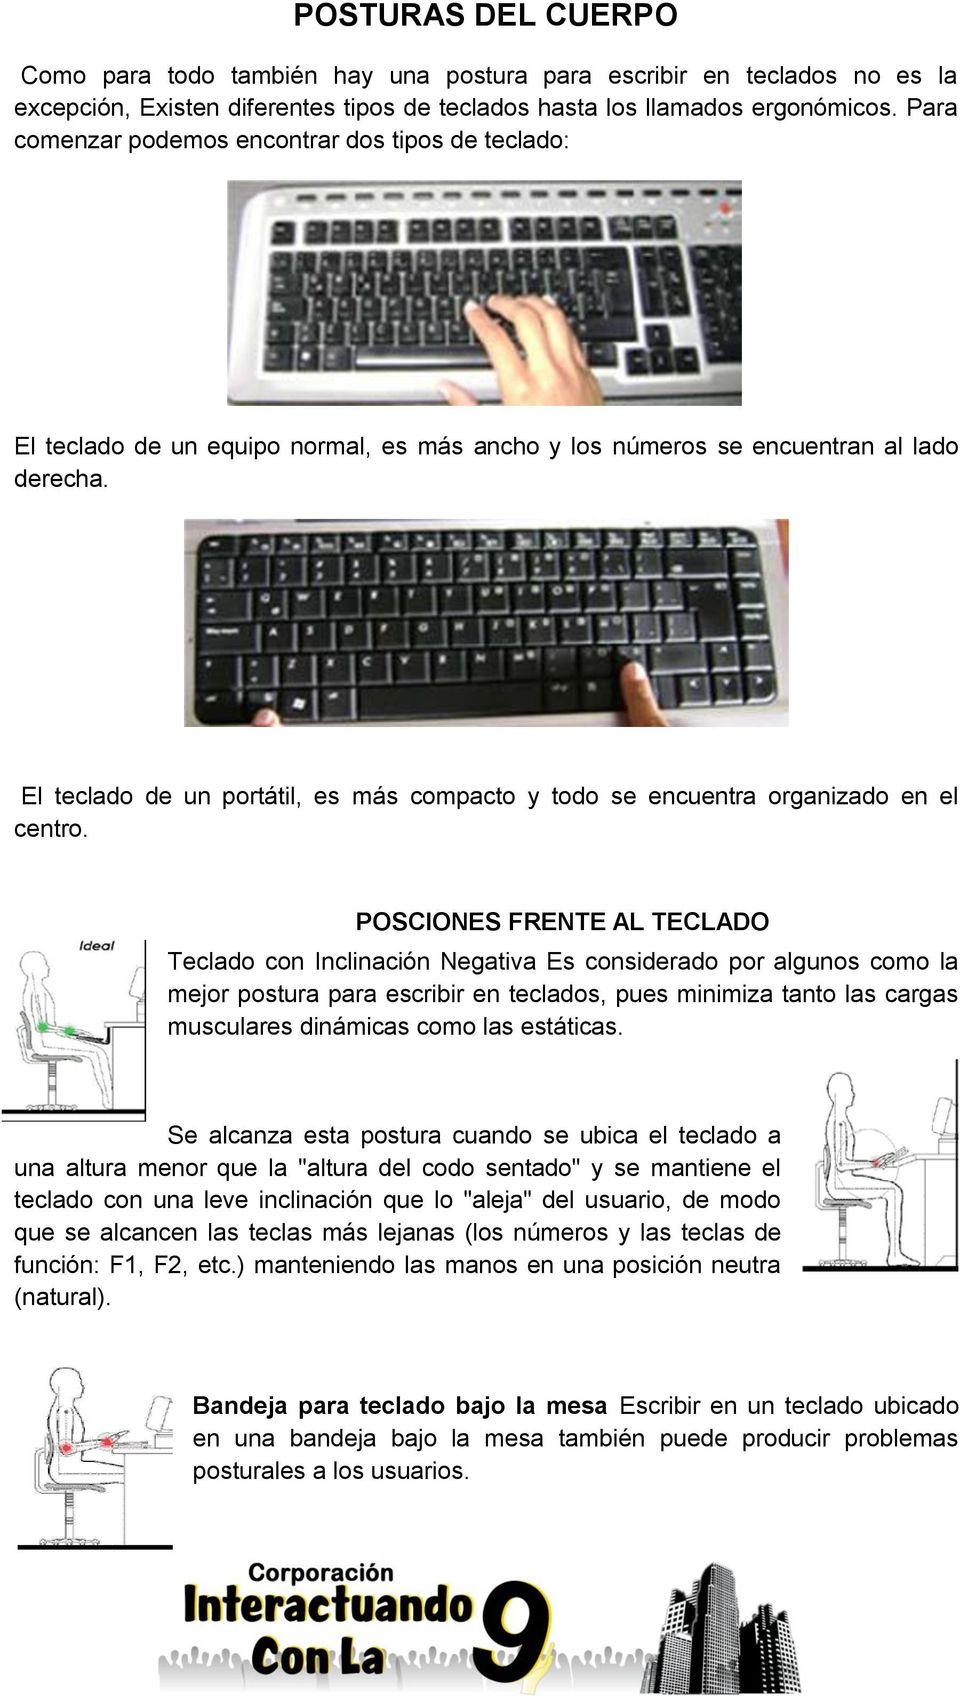 El teclado de un portátil, es más compacto y todo se encuentra organizado en el centro.